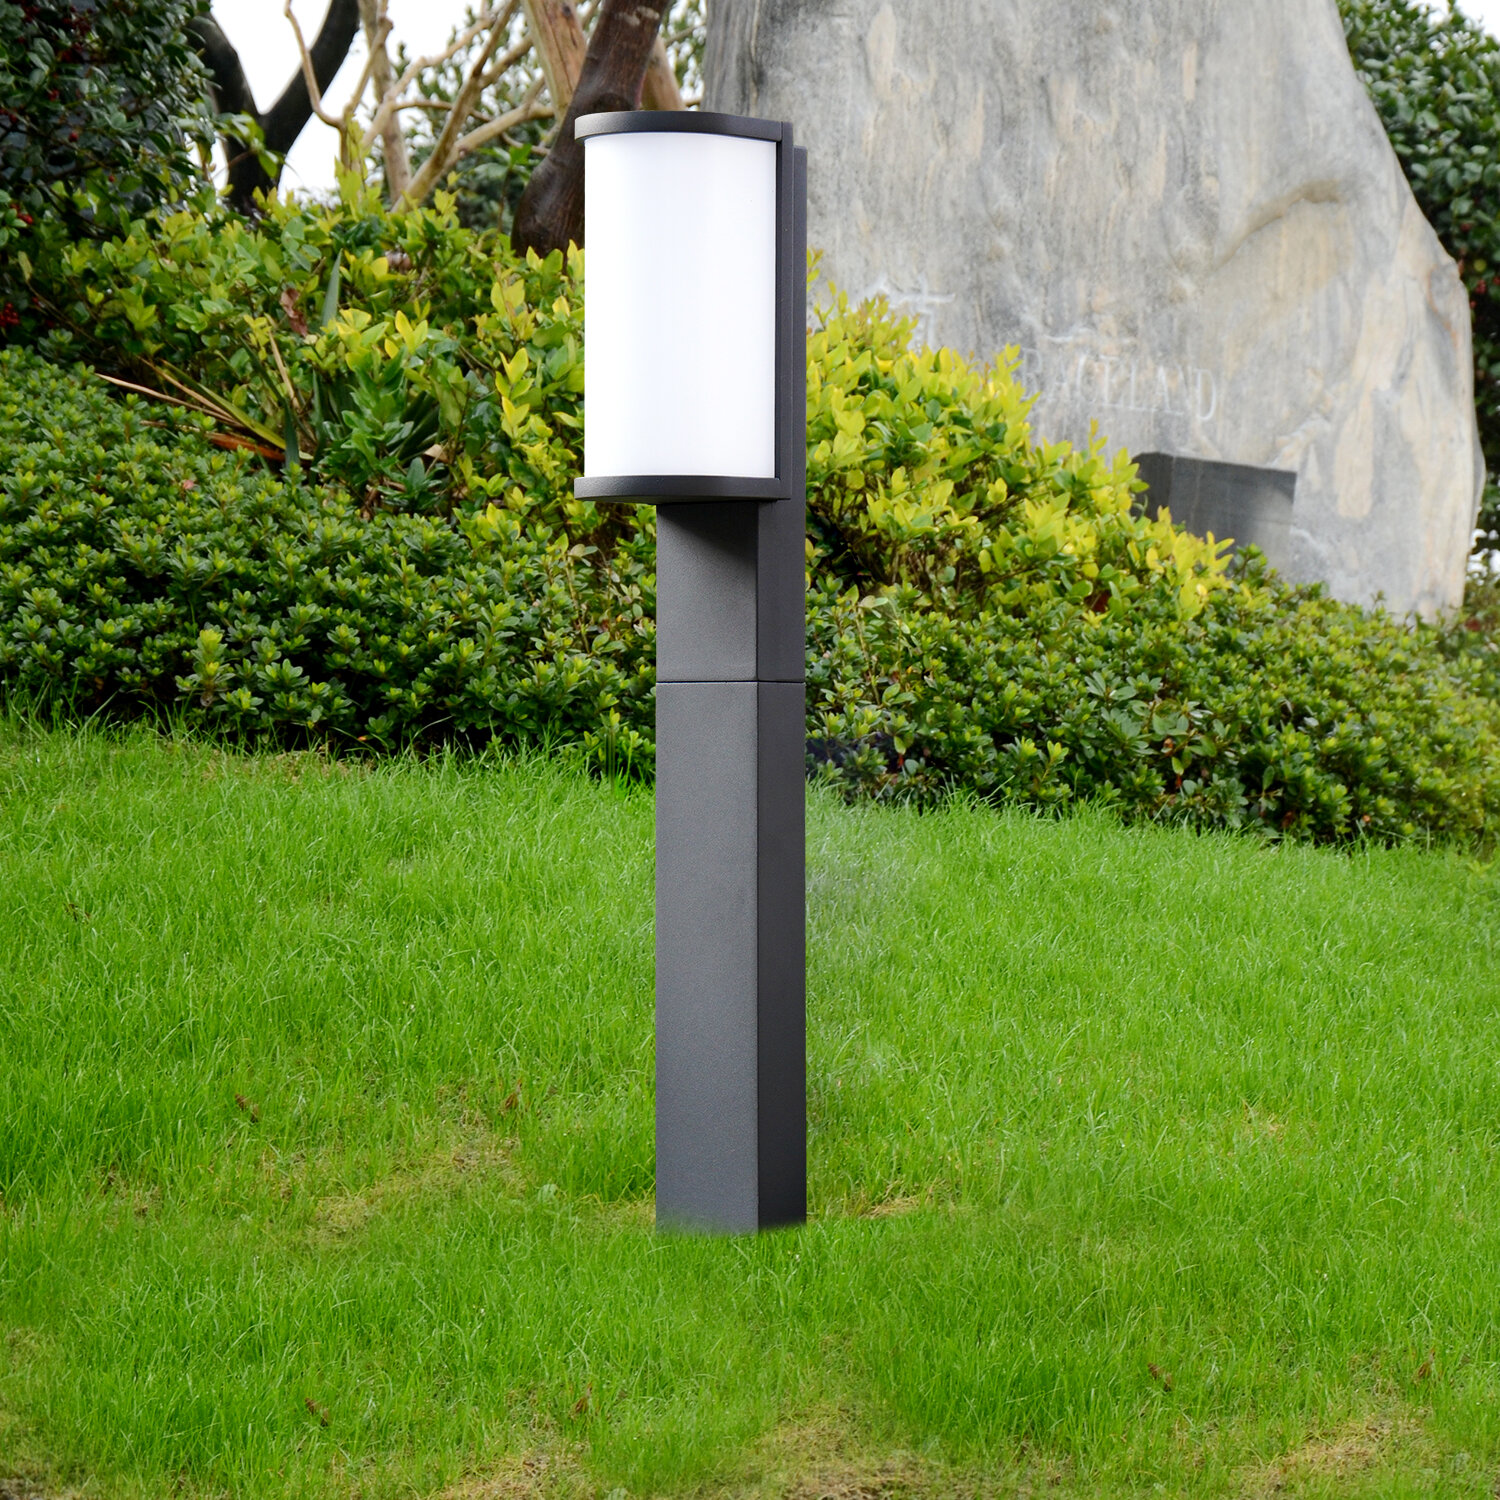 Modern Waterproof Bollard Lamp LED Light for Pathway Garden Yard Lawn Landscape 